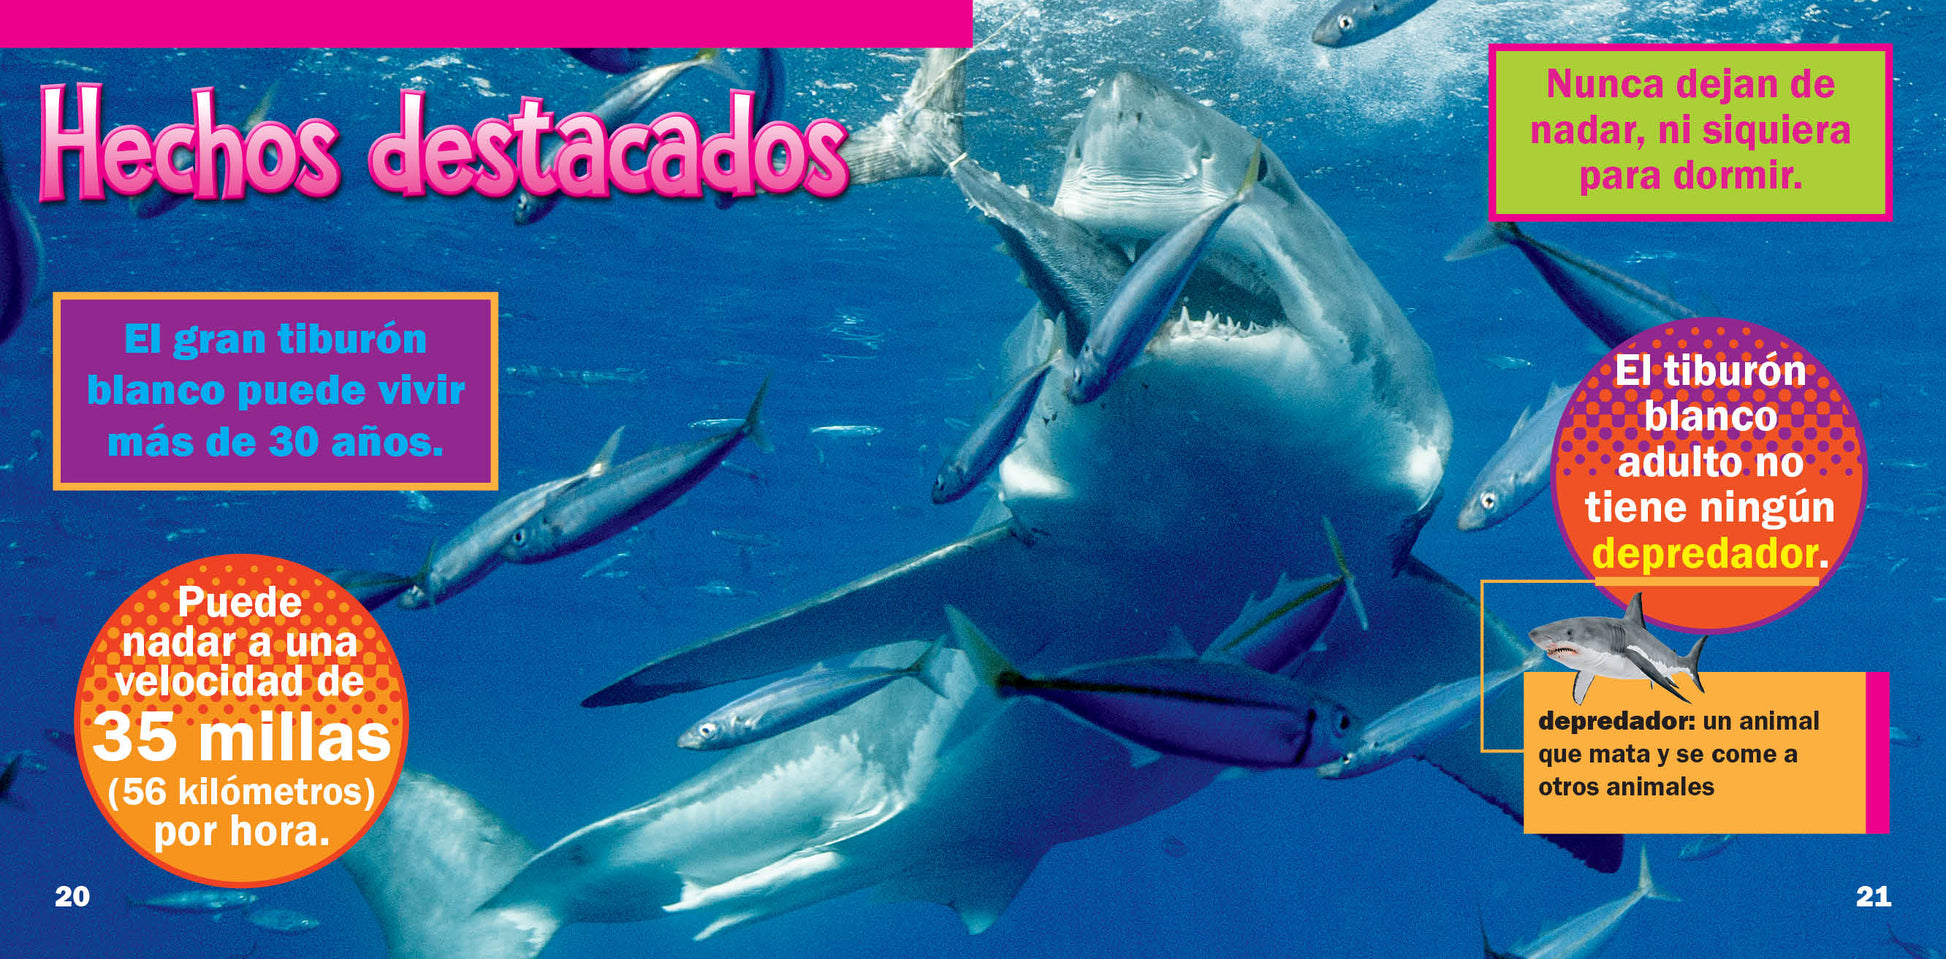 tiburón  Tradução de tiburón no Dicionário Infopédia de Espanhol -  Português